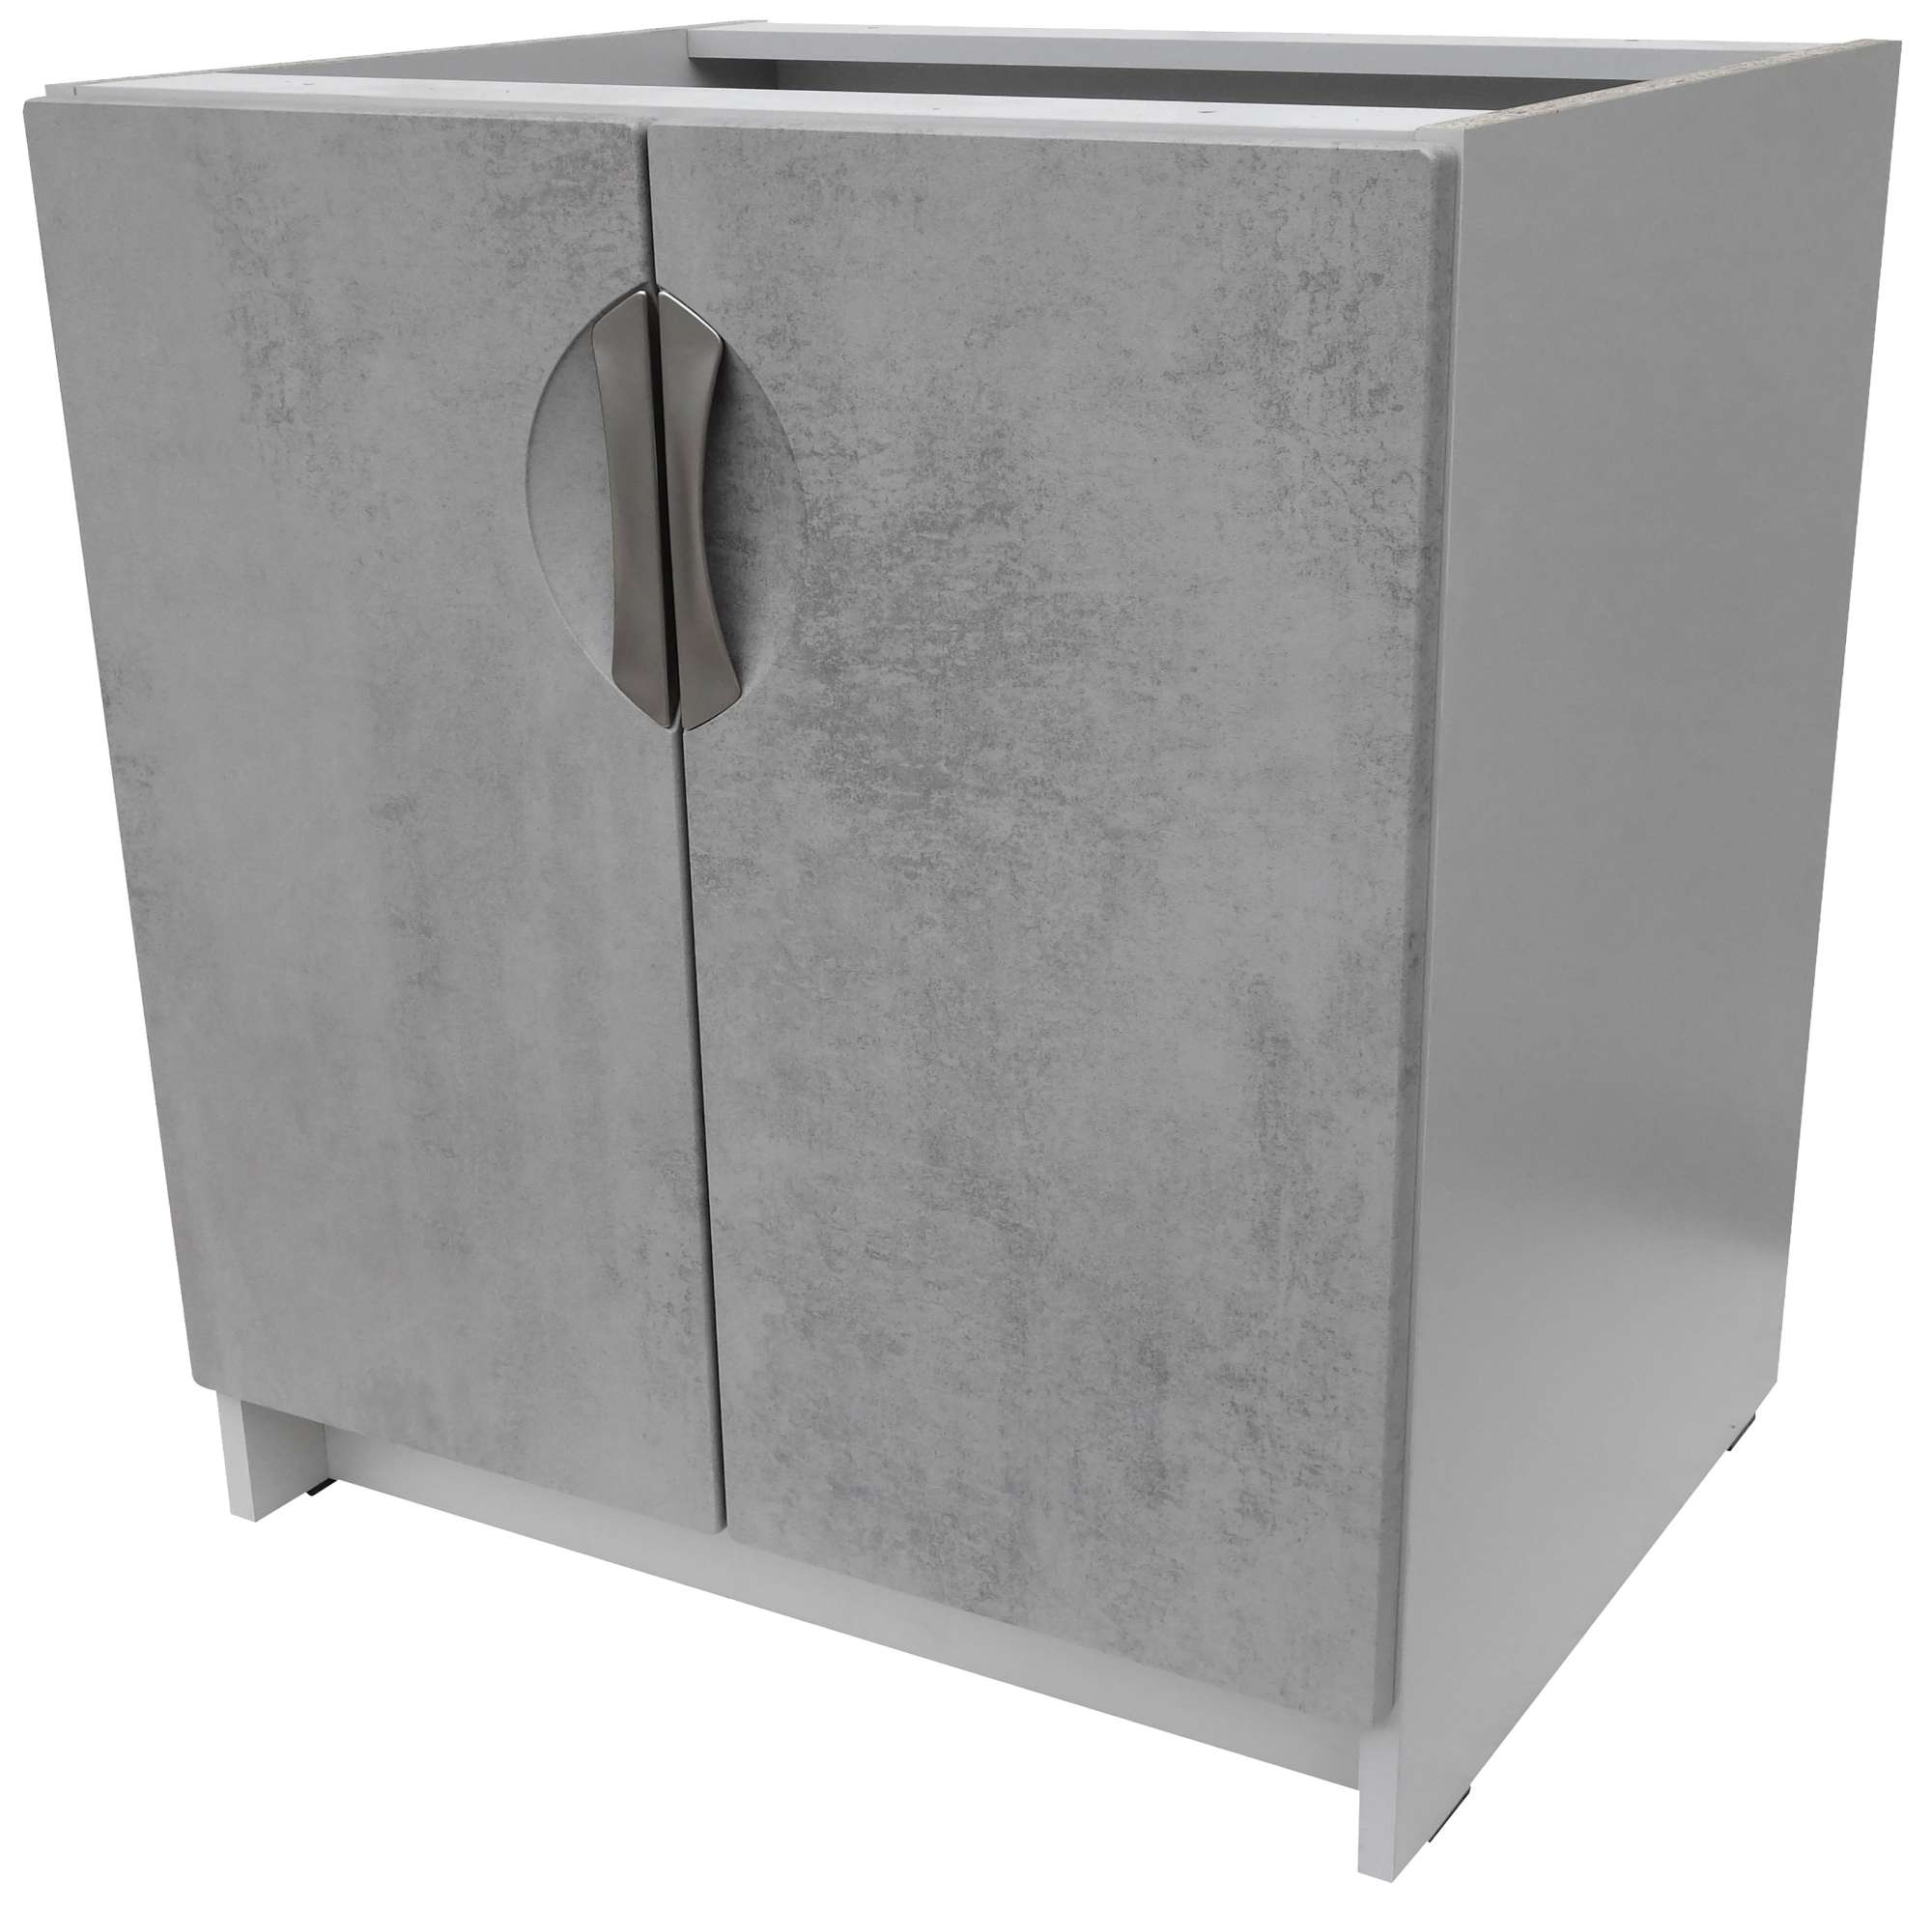 Kuchyňská skříňka spodní 80 cm barva beton korpus šedý